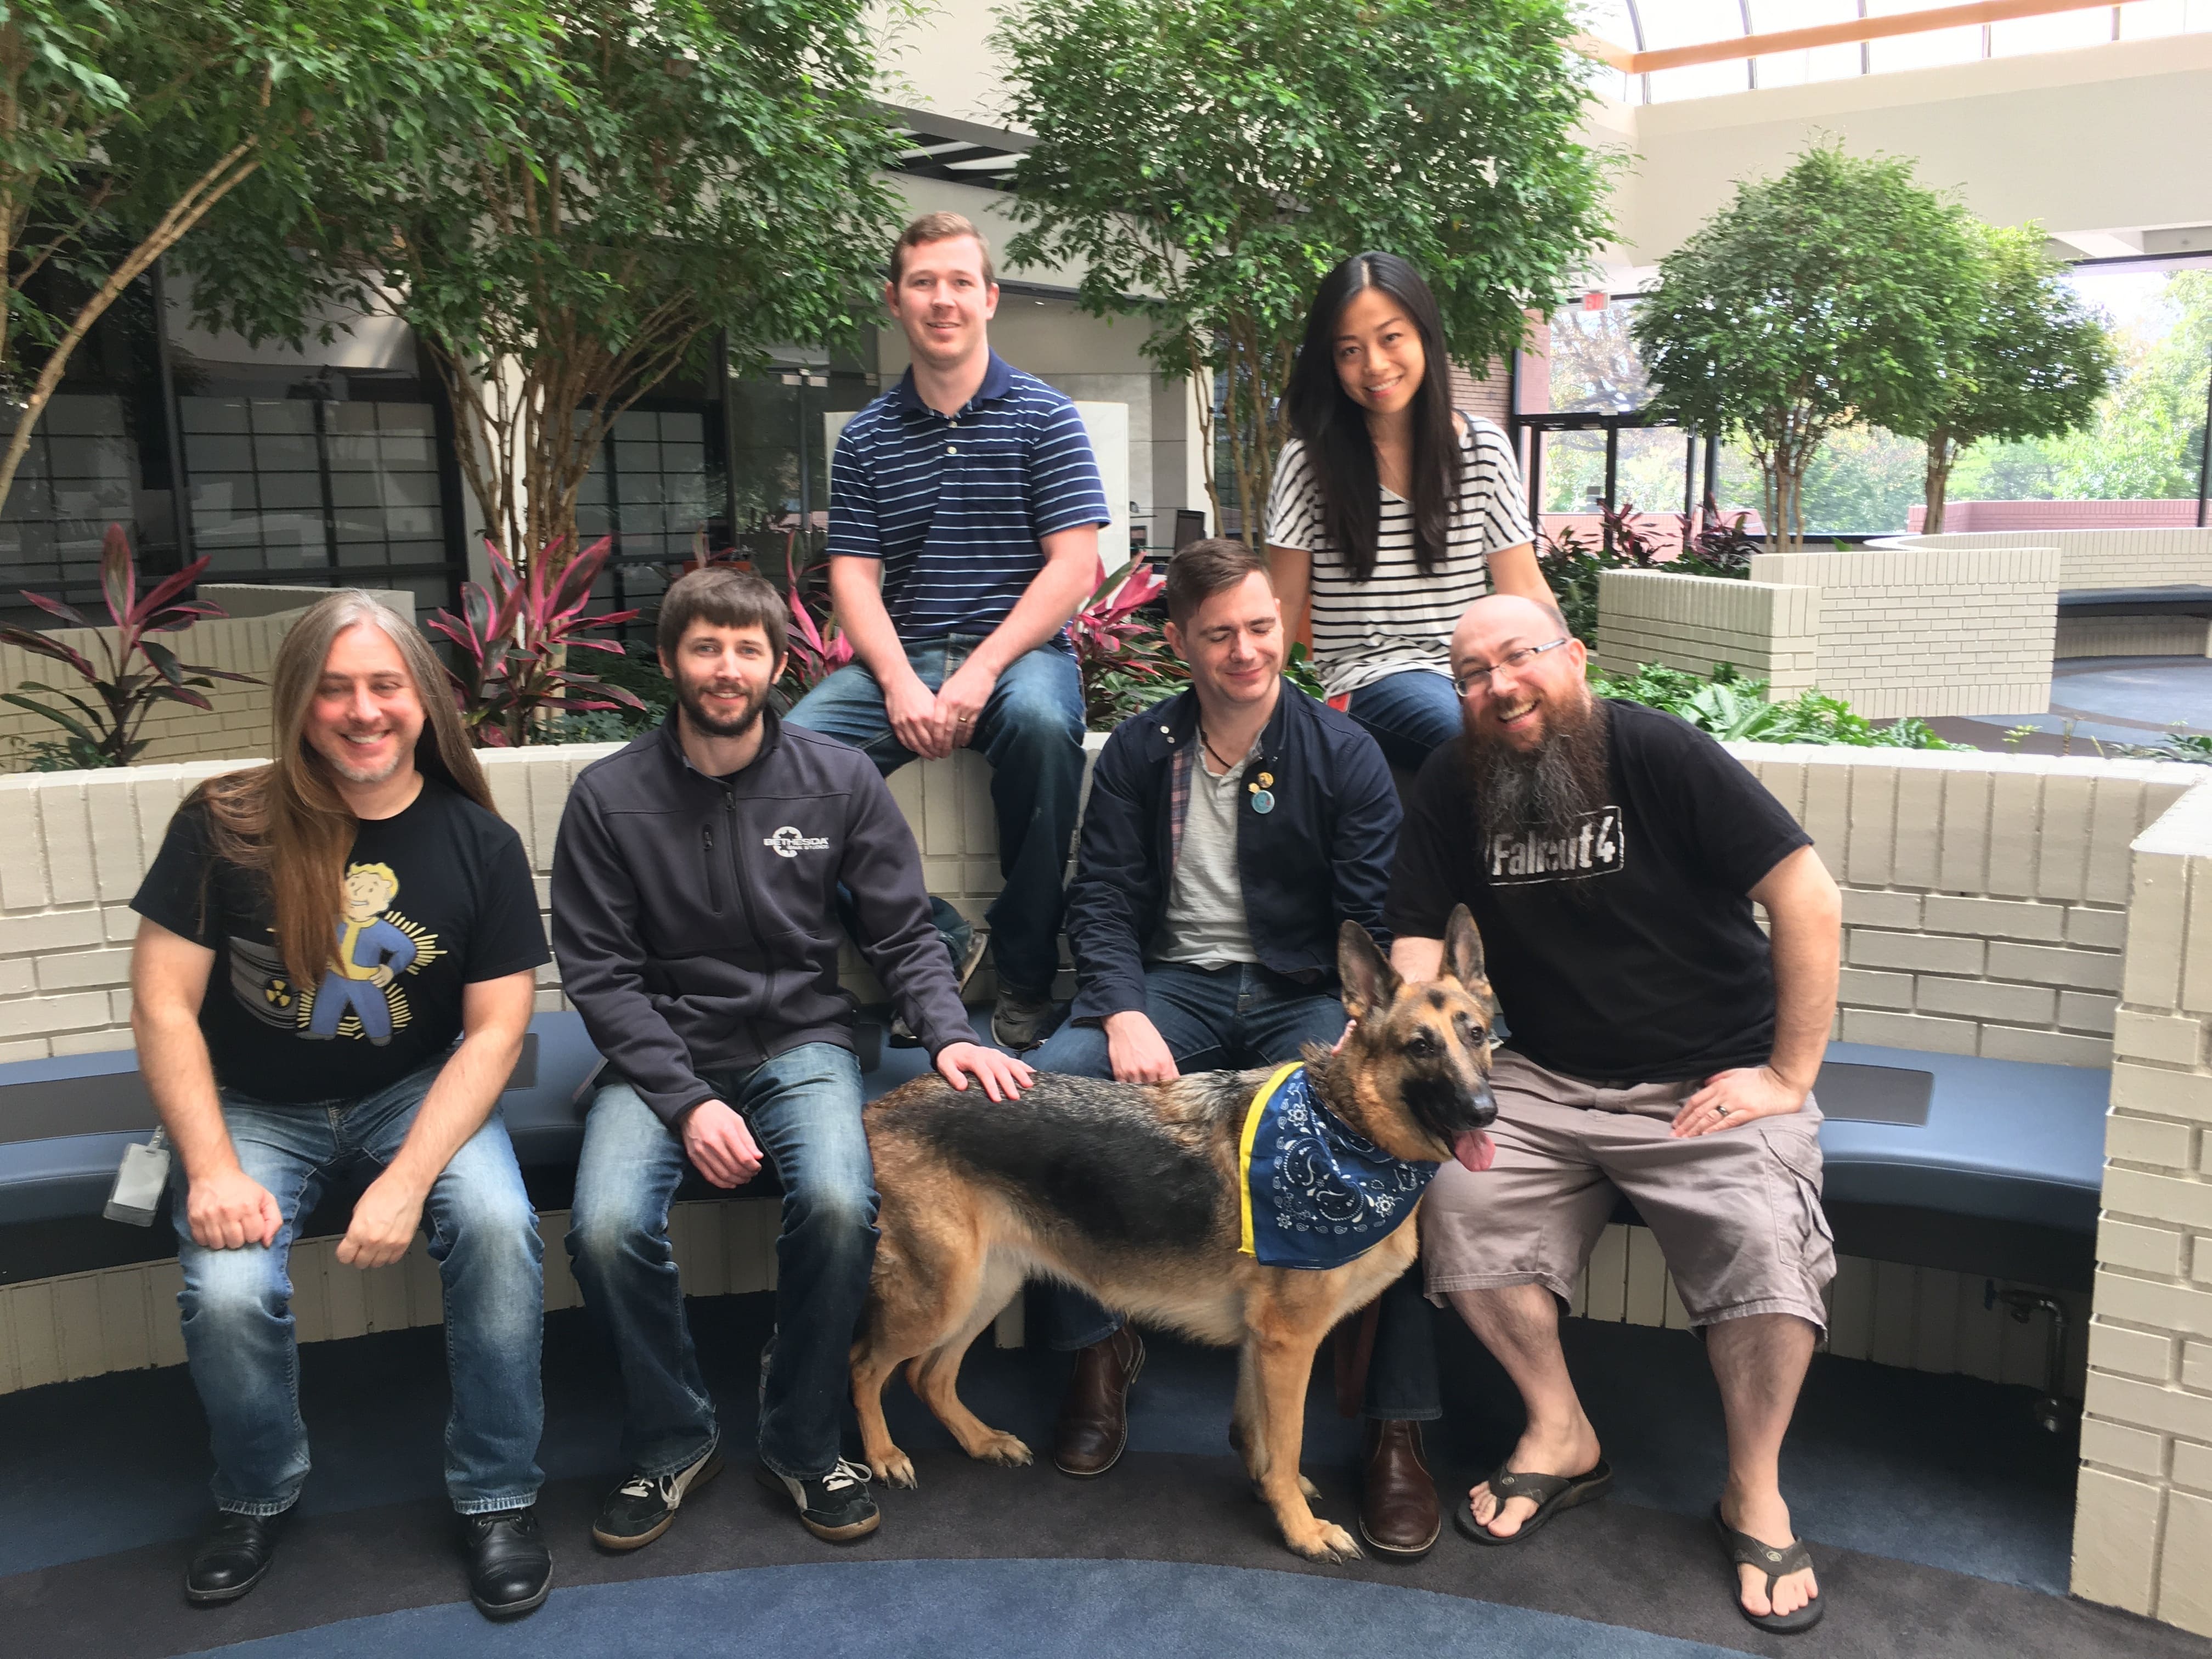 Xbox联合B社慈善捐款1万美元以纪念《辐射4》狗肉原型